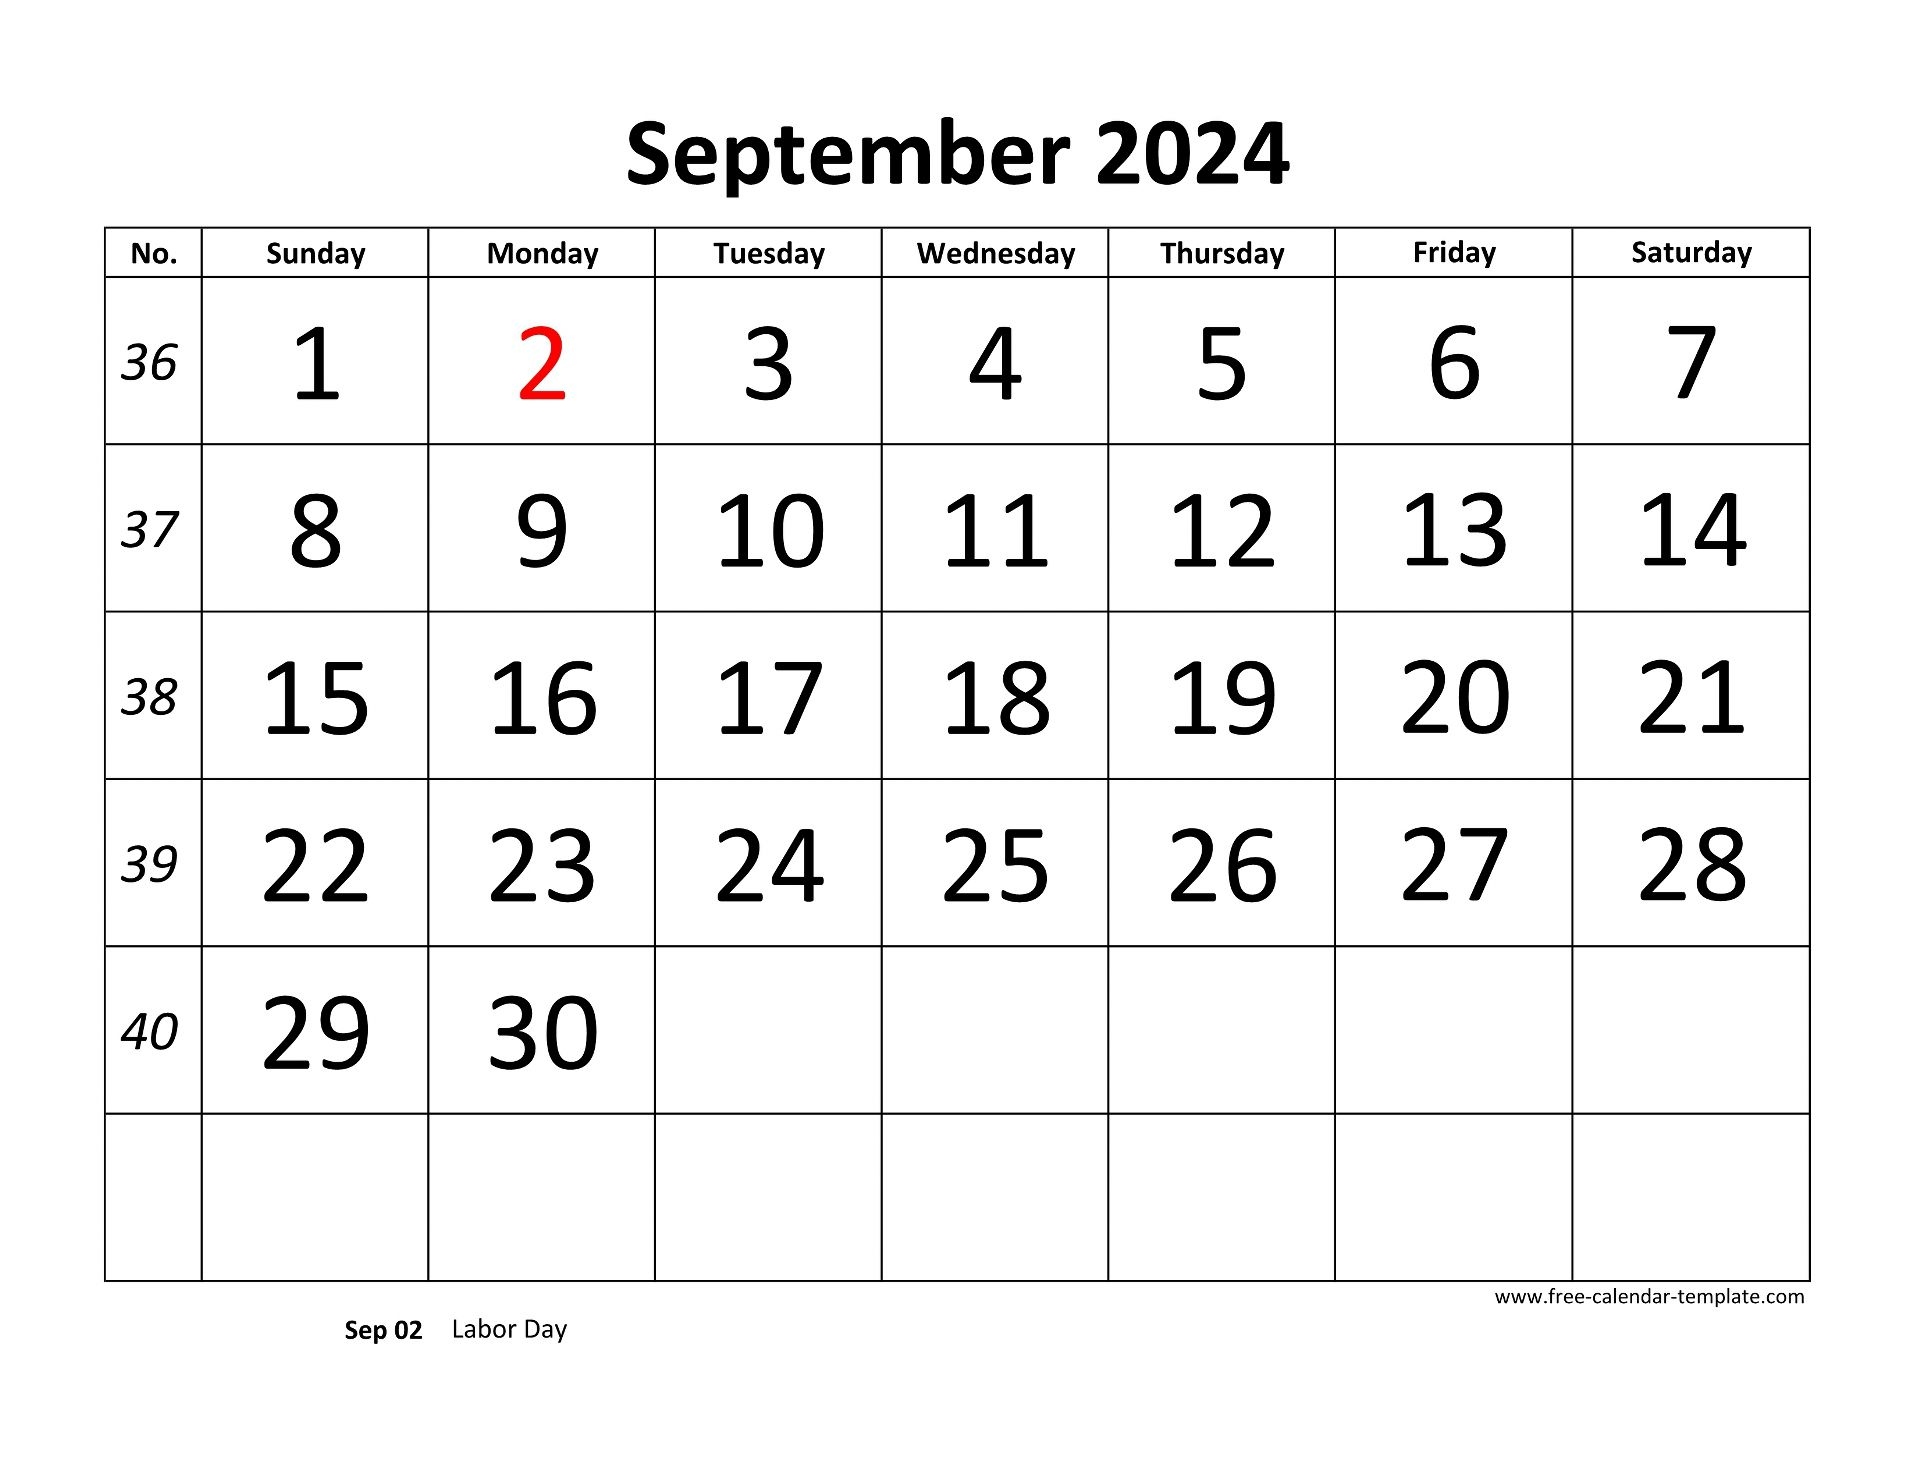 September 2024 Free Calendar Tempplate | Free-Calendar-Template pertaining to Free Printable Calendar 2024 Word Format